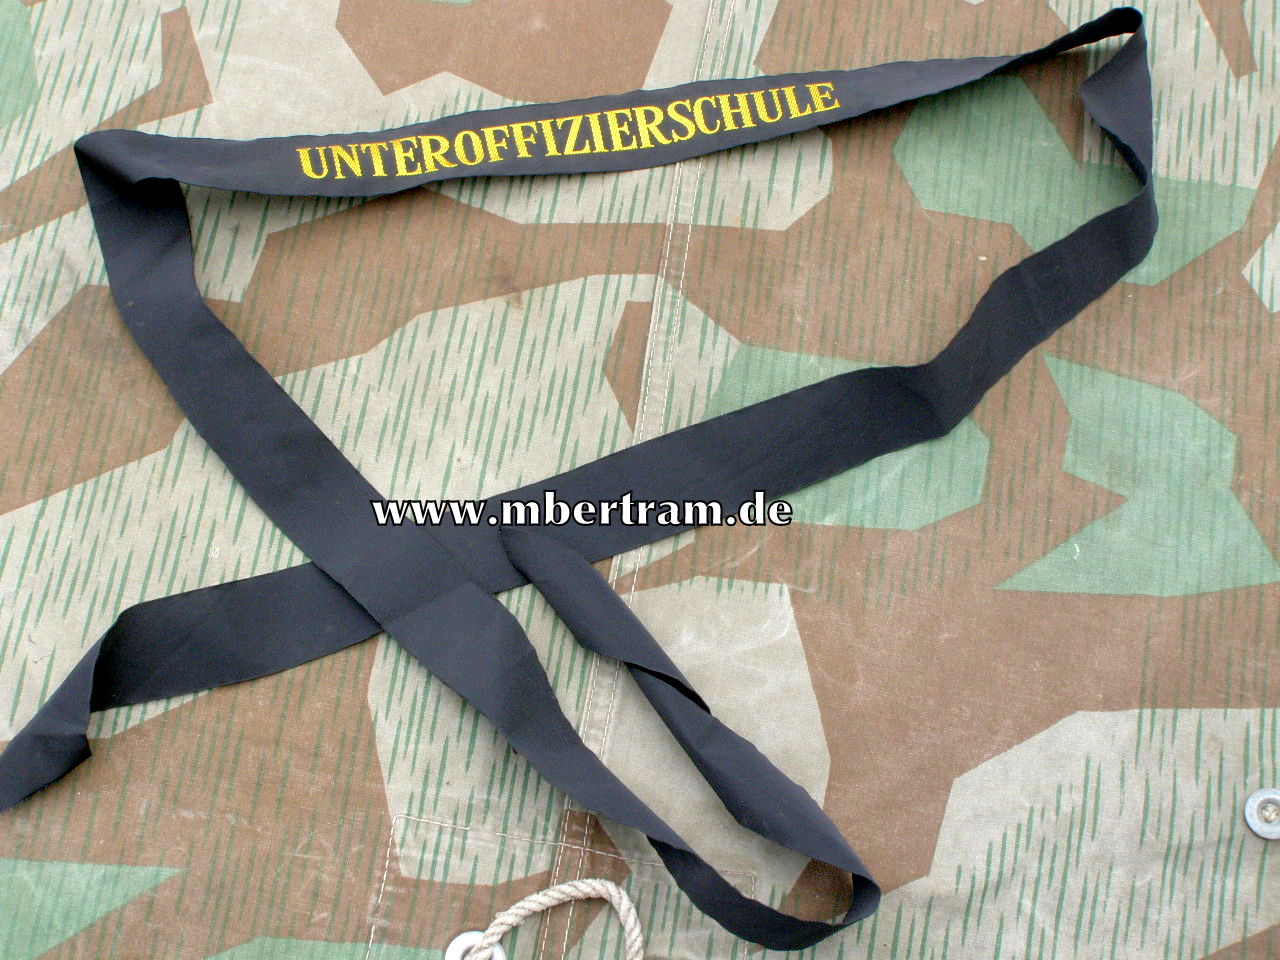 Bundesmarine Mützenband, "Unteroffizierschule" .